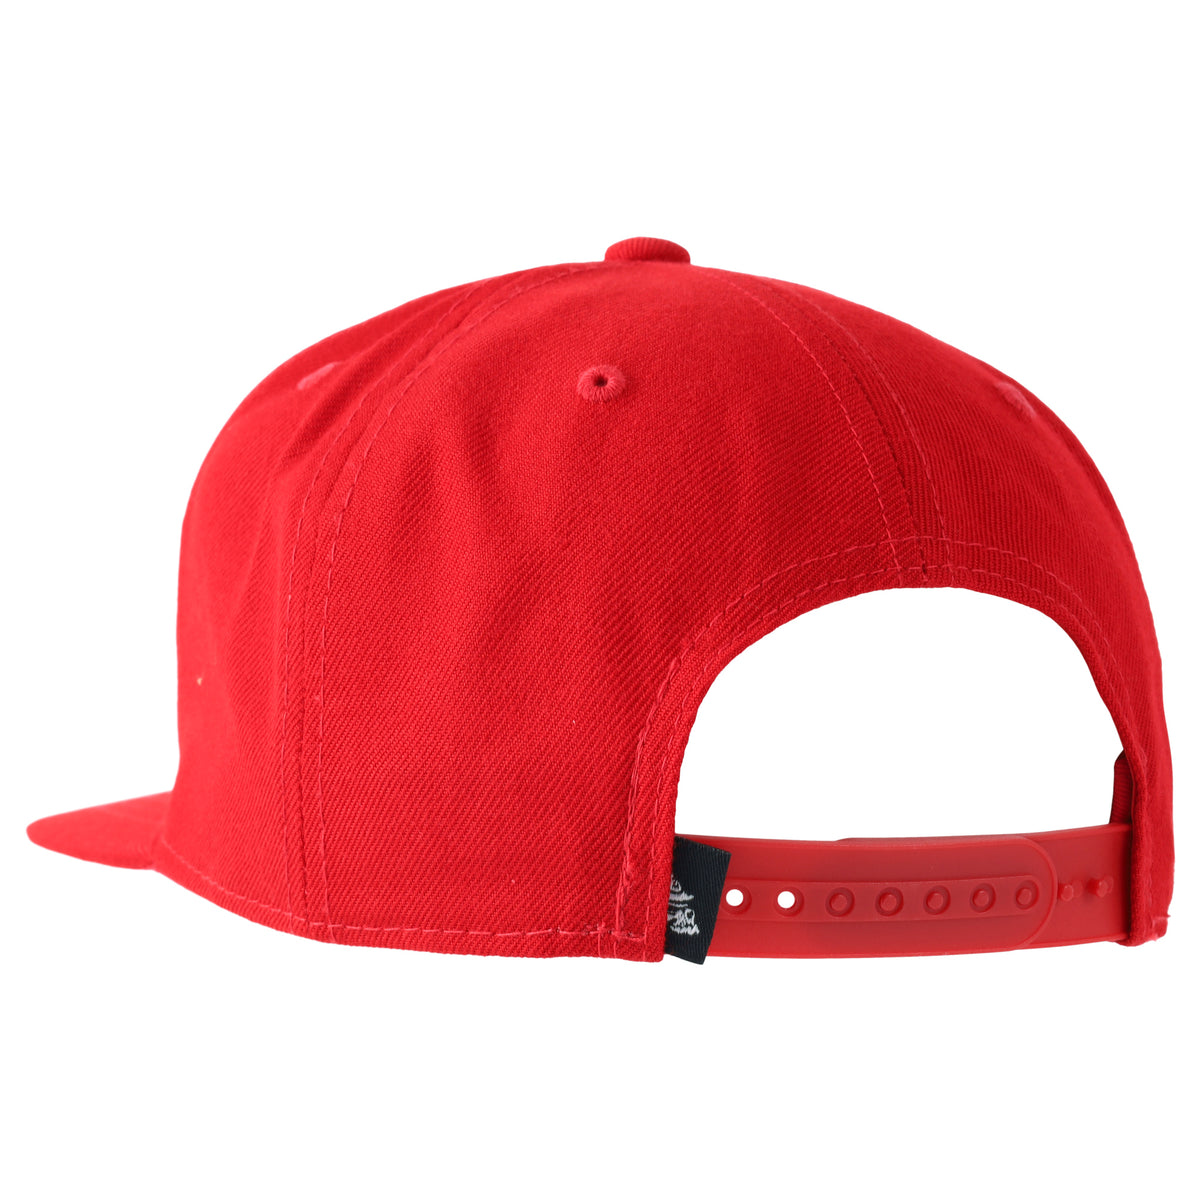 HELMET SNAPBACK HAT RED